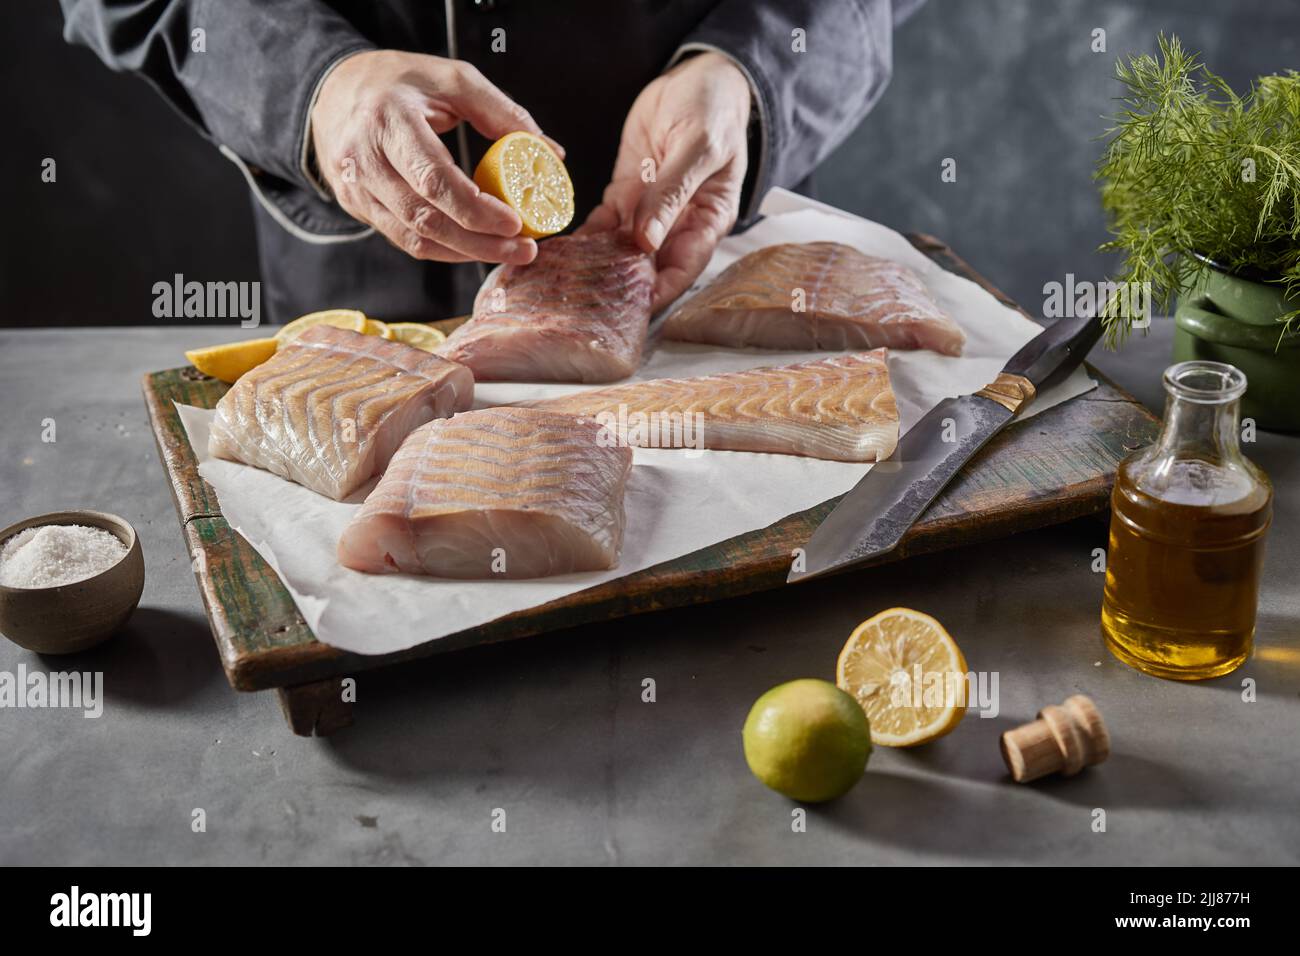 De dessus de la récolte anonyme mâle cuire en ajoutant le jus de citron sur le filet de poisson cru tout en préparant un plat savoureux dans la cuisine Banque D'Images